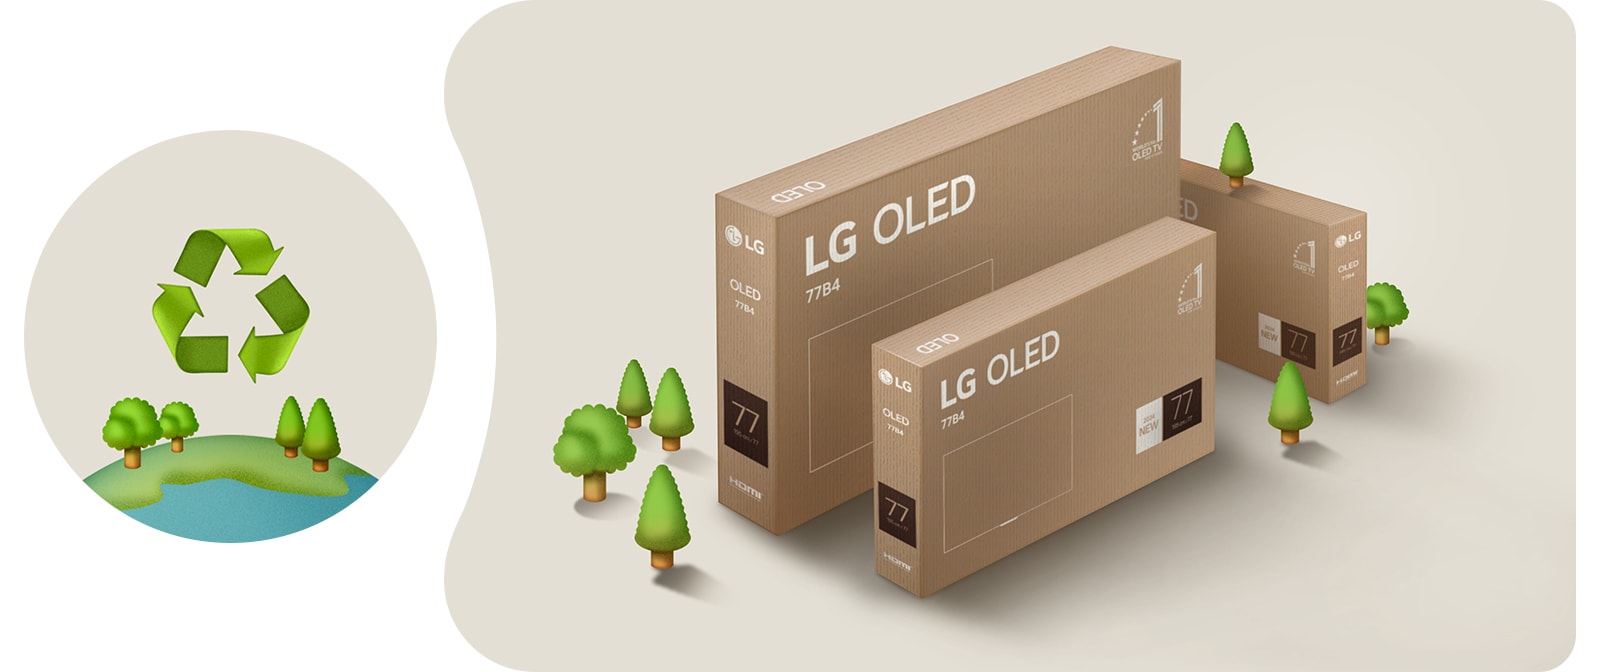 Упаковка телевизора LG OLED на бежевом фоне с иллюстрированными деревьями. 